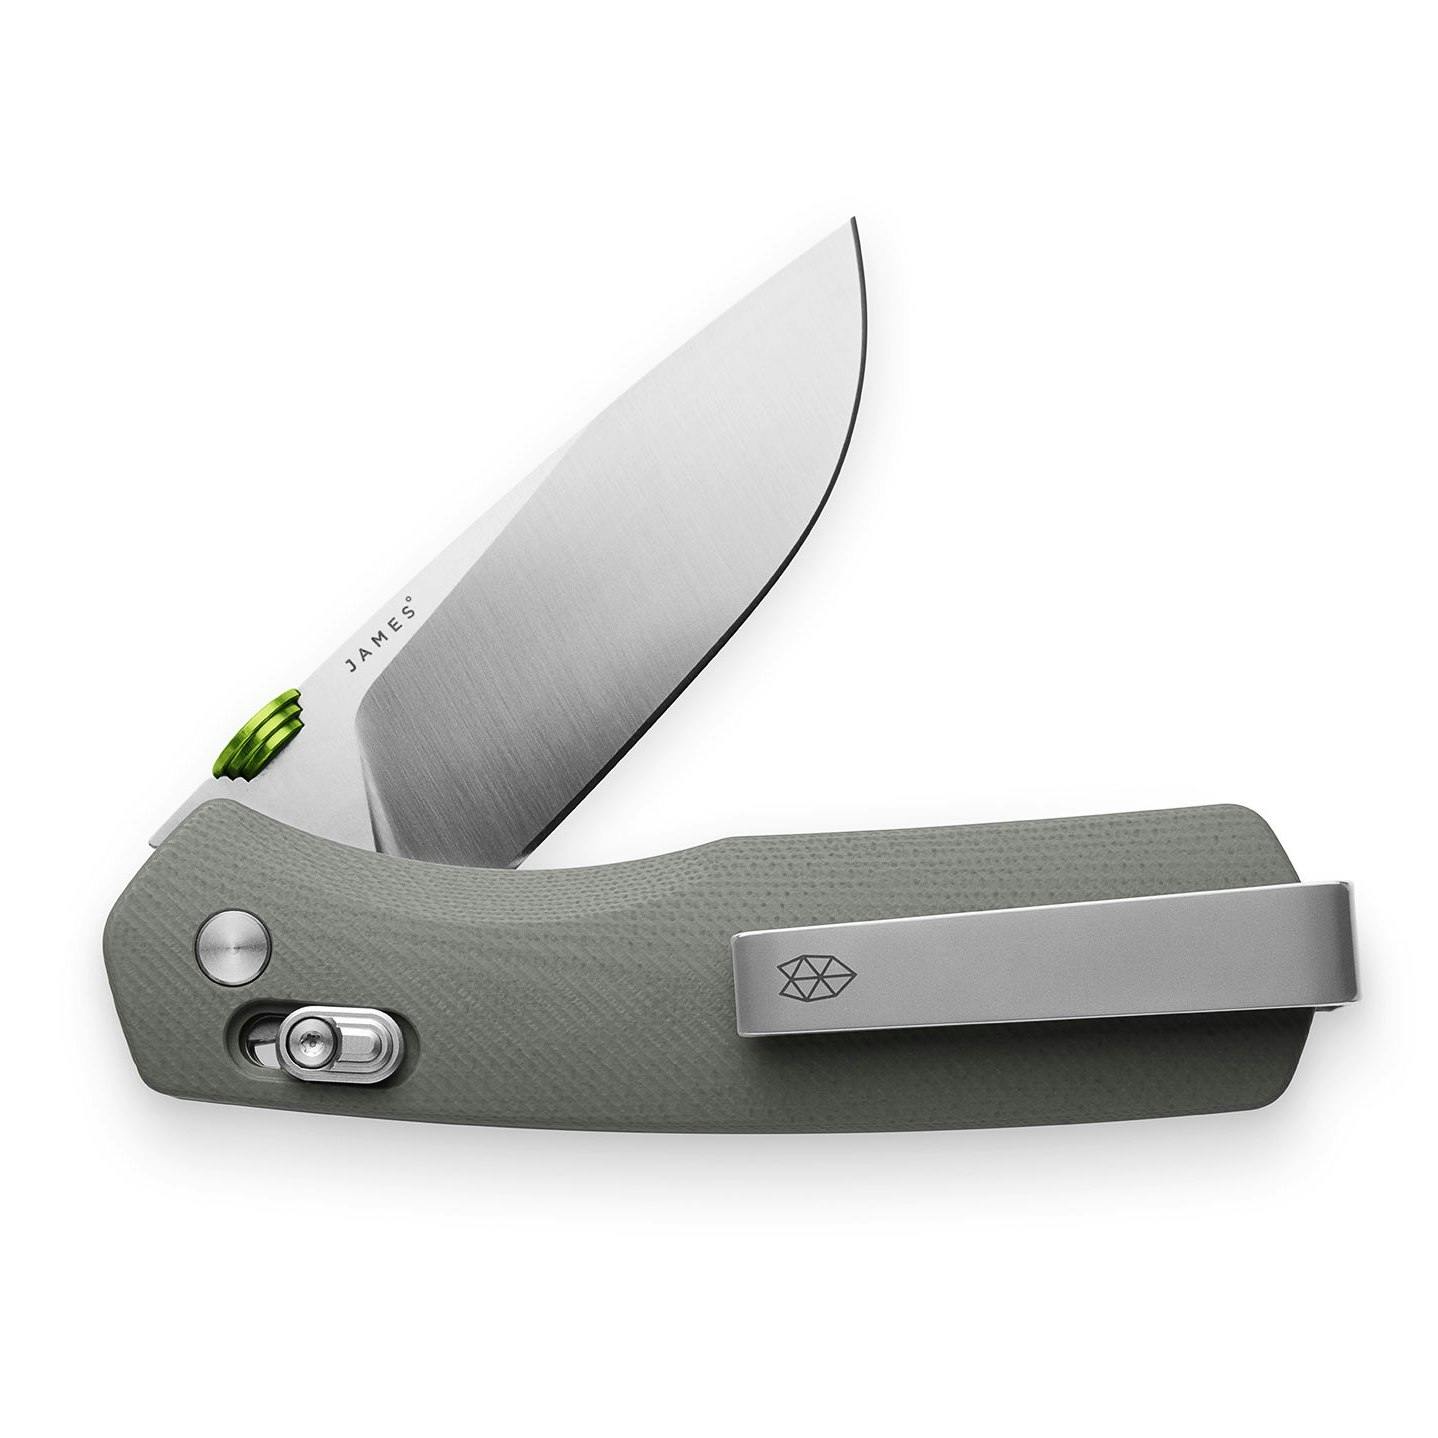 The Carter Pocket Knife